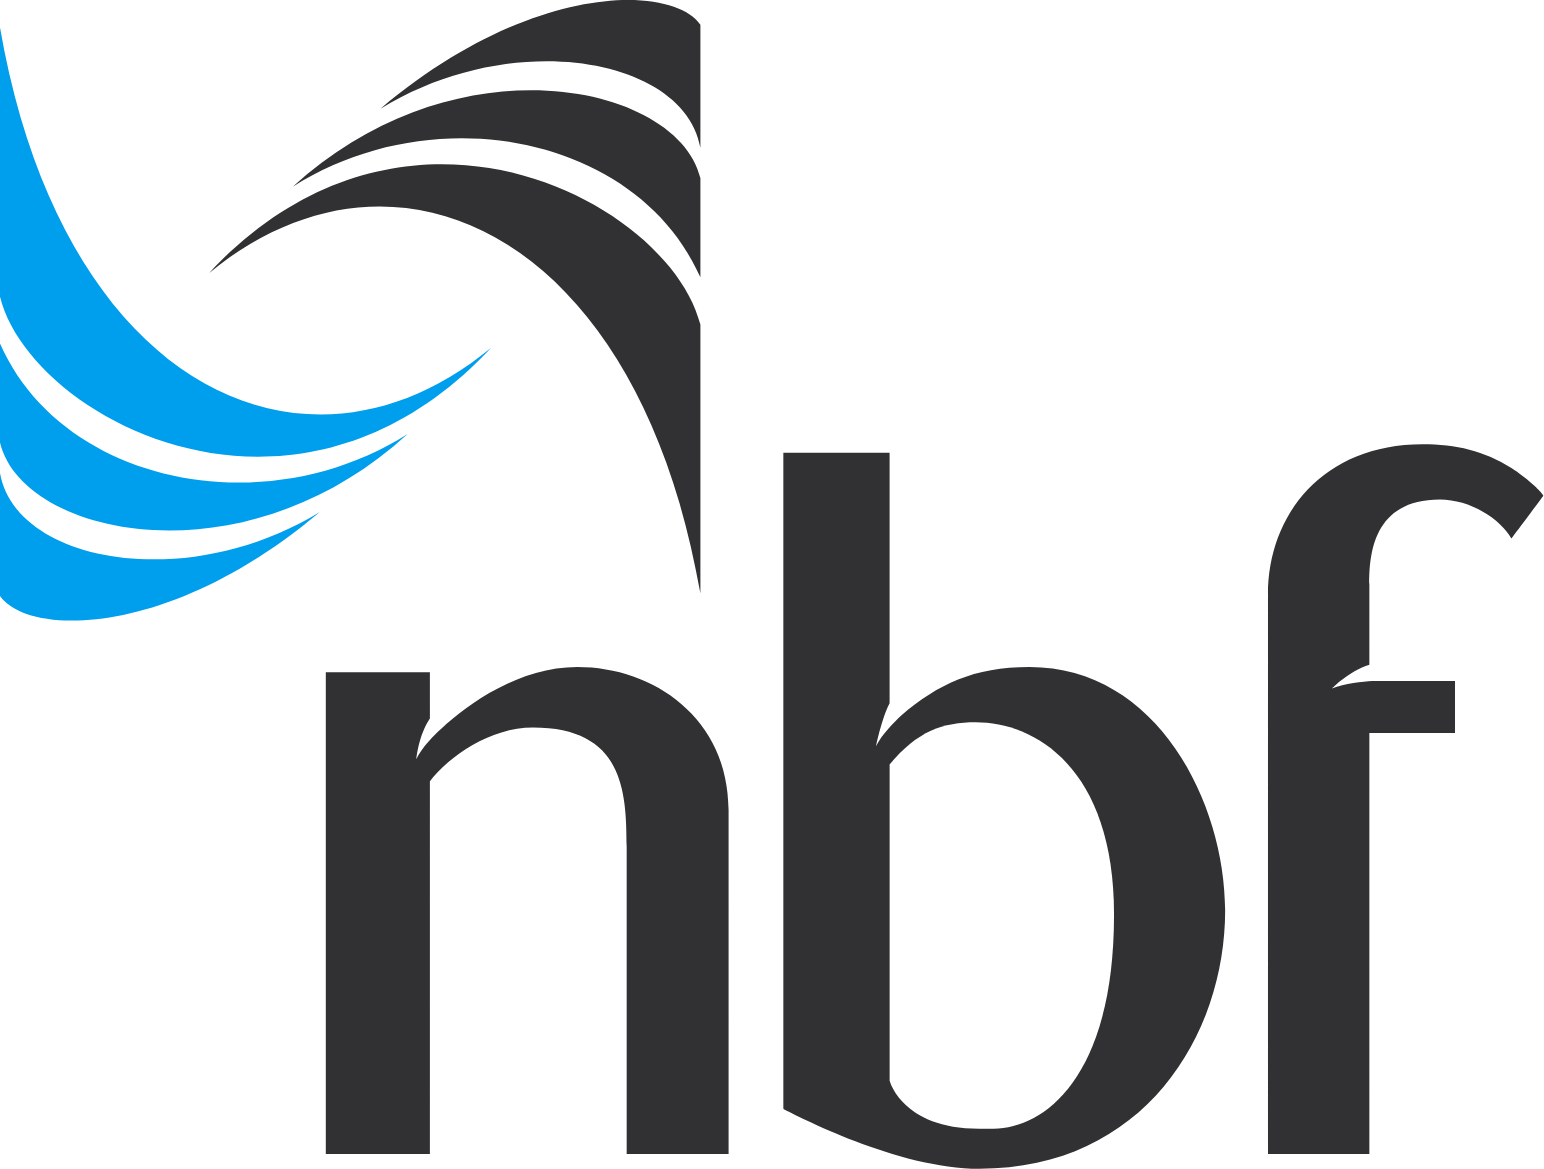 National Bank of Fujairah logo large (transparent PNG)